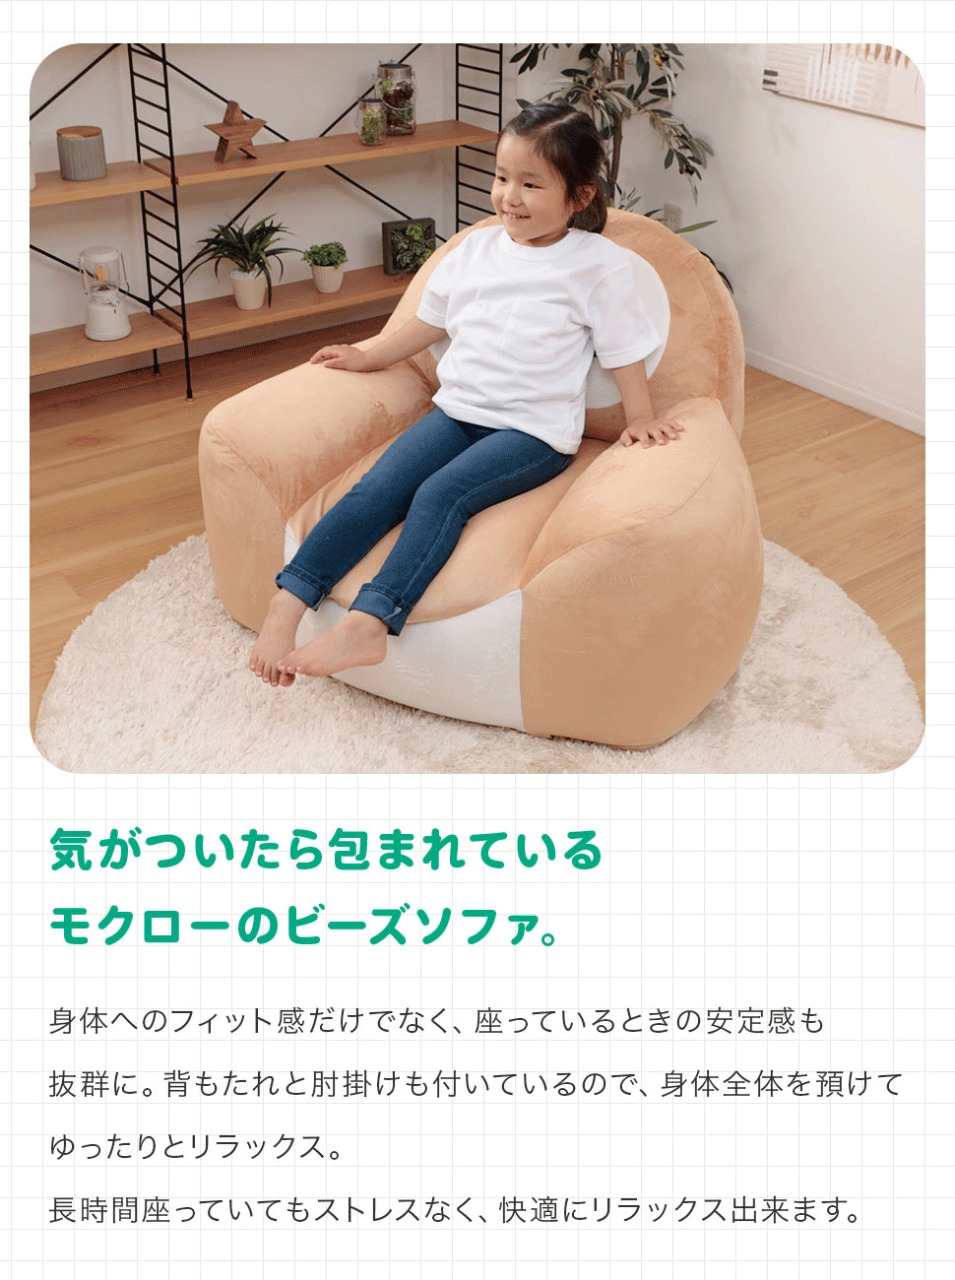 Pokémon: ¡Un sofa inspirado en Rowlet ha sido anunciado en Japón! 45